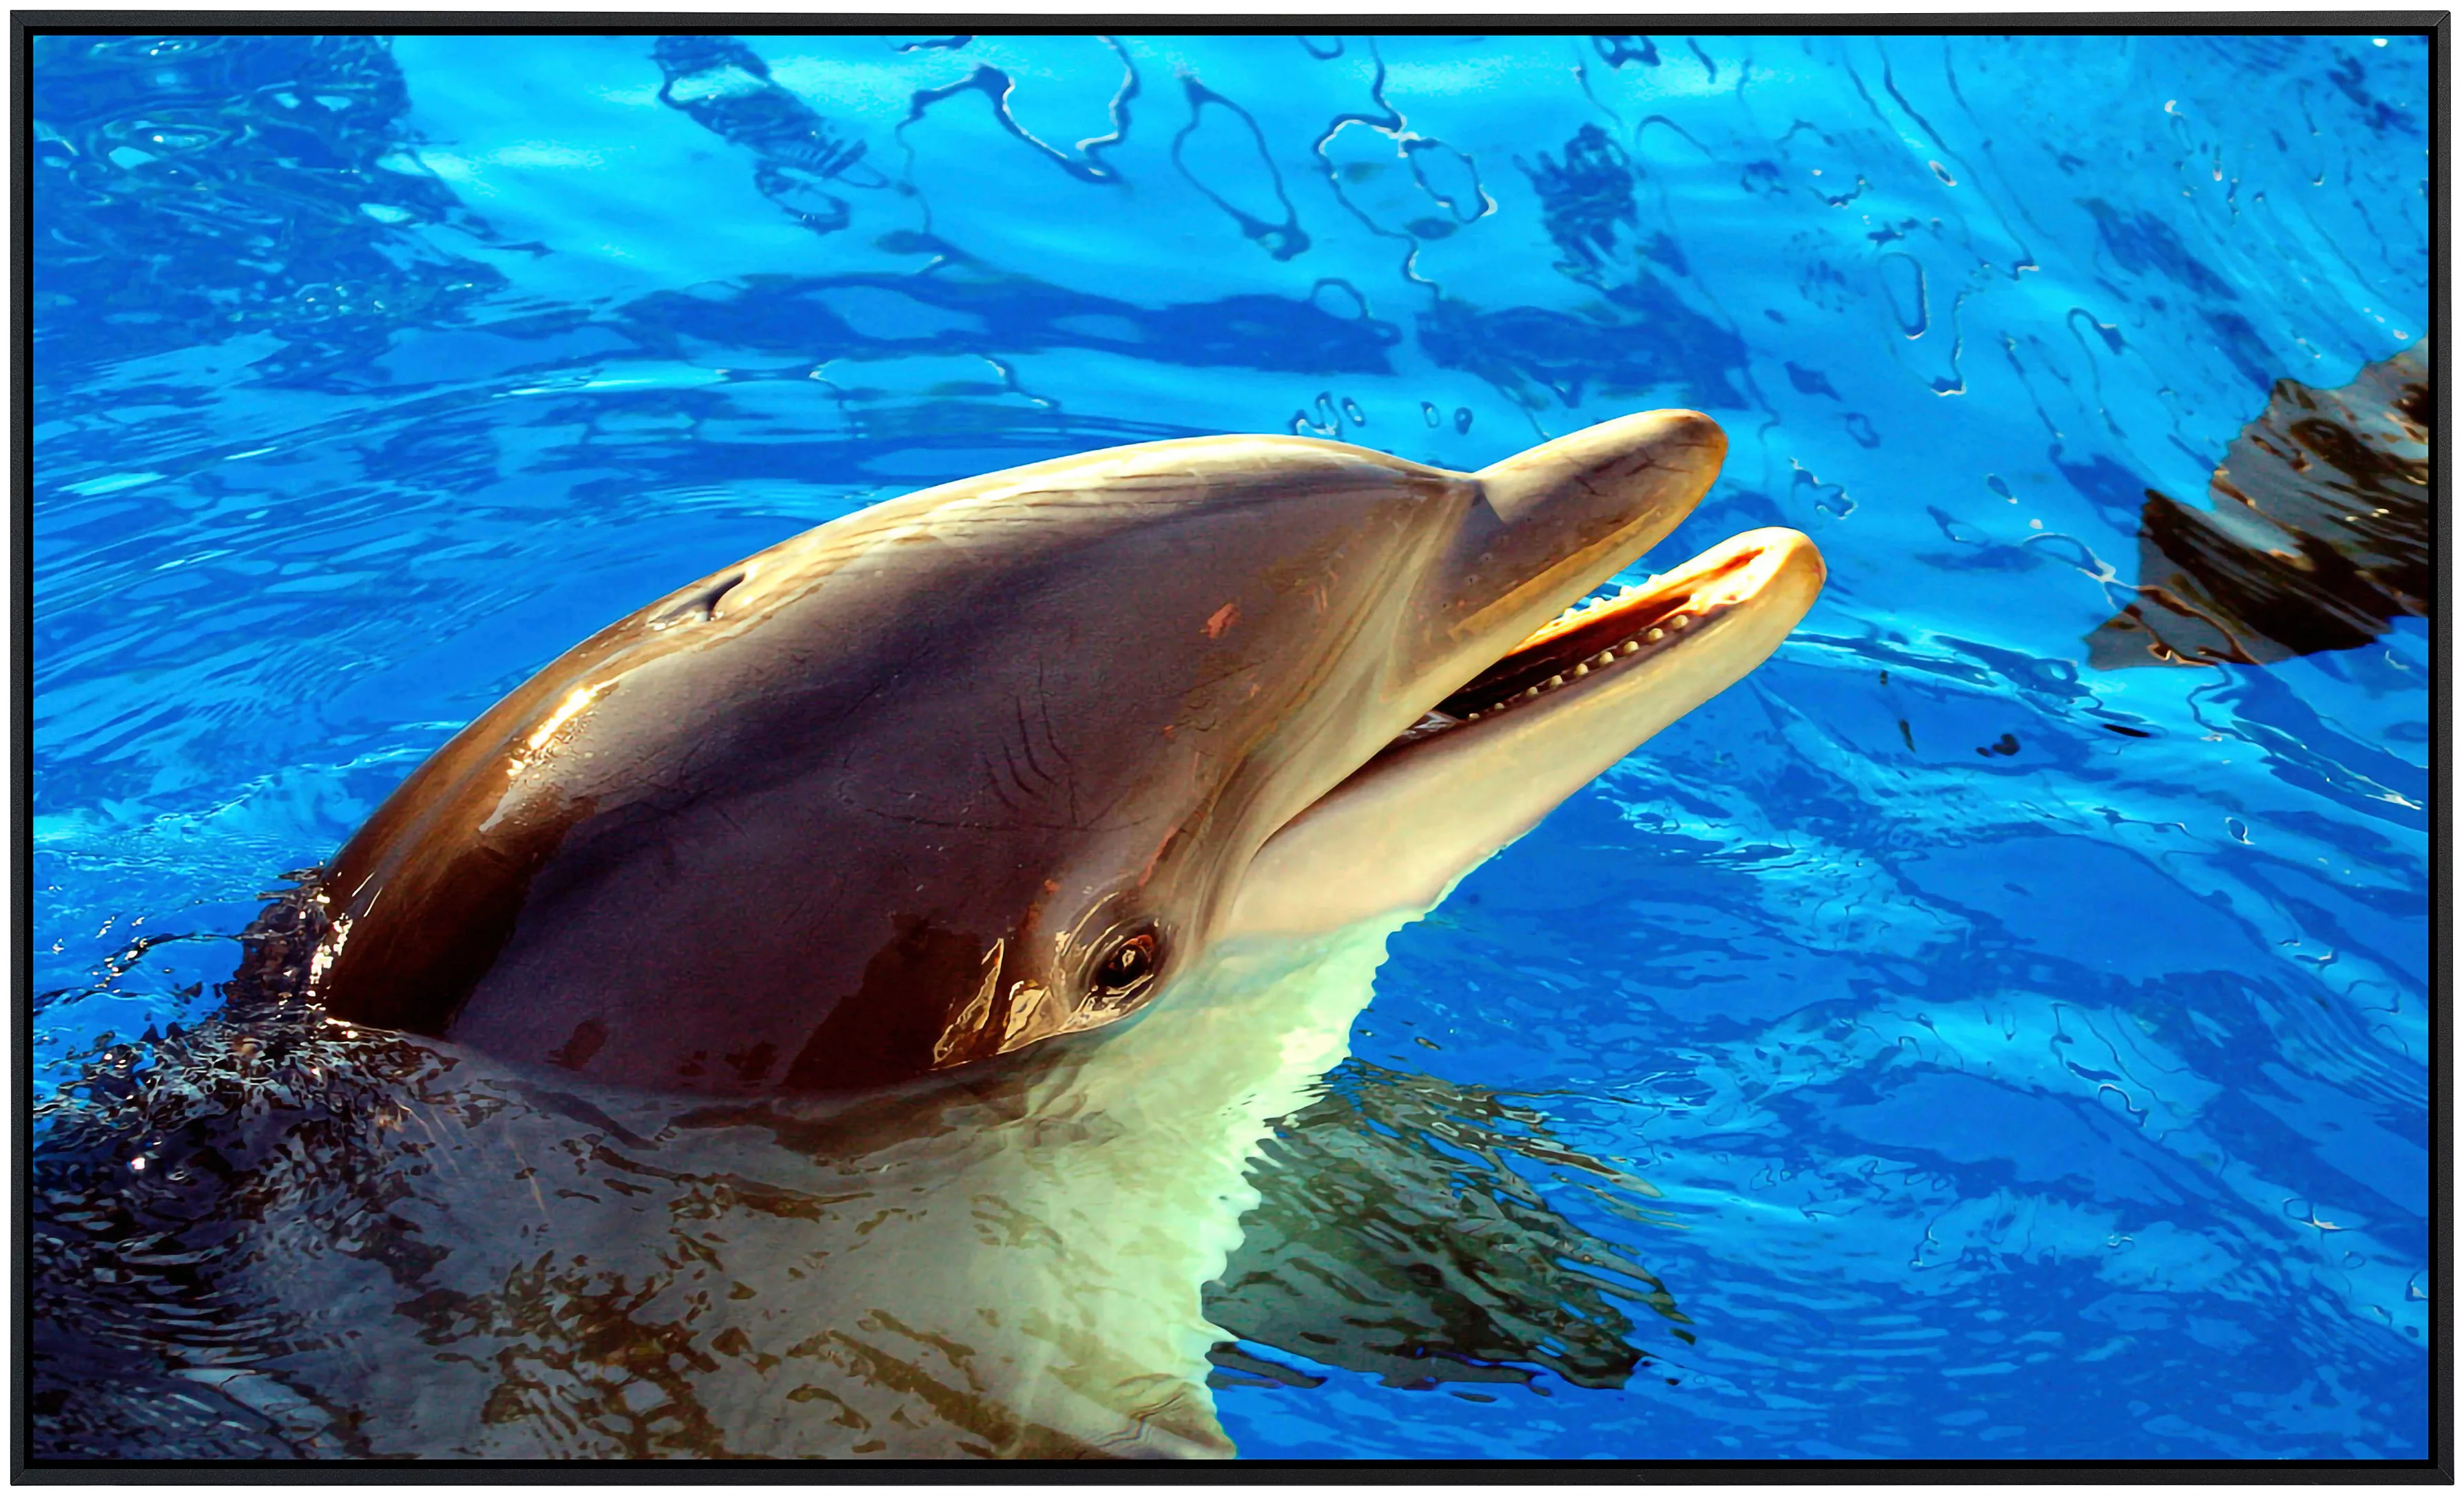 Papermoon Infrarotheizung »Delfin«, sehr angenehme Strahlungswärme günstig online kaufen